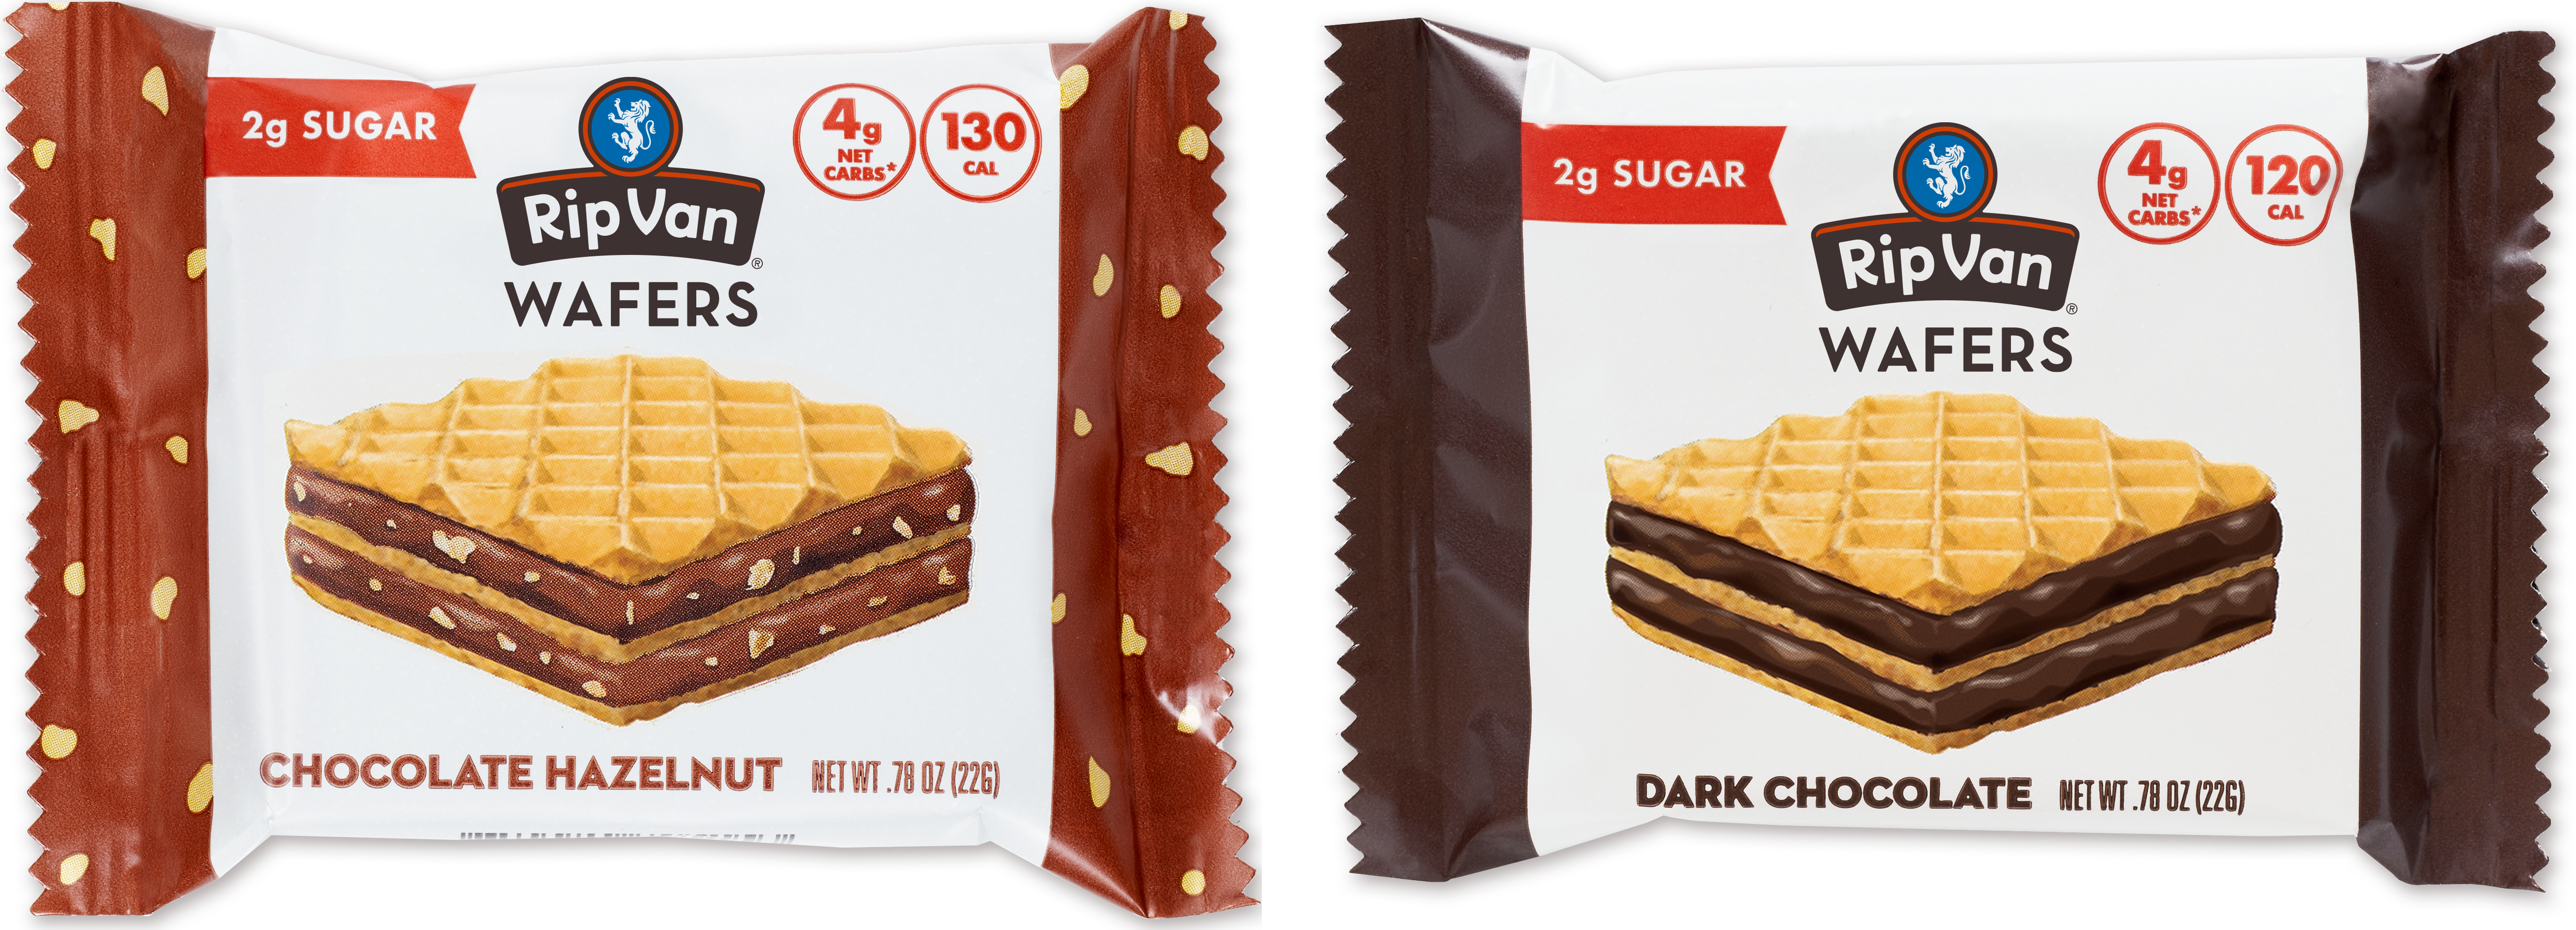 Wafer Snacks by Rip Van - Variety Pack - High-quality Cakes & Cookies by Rip Van at 